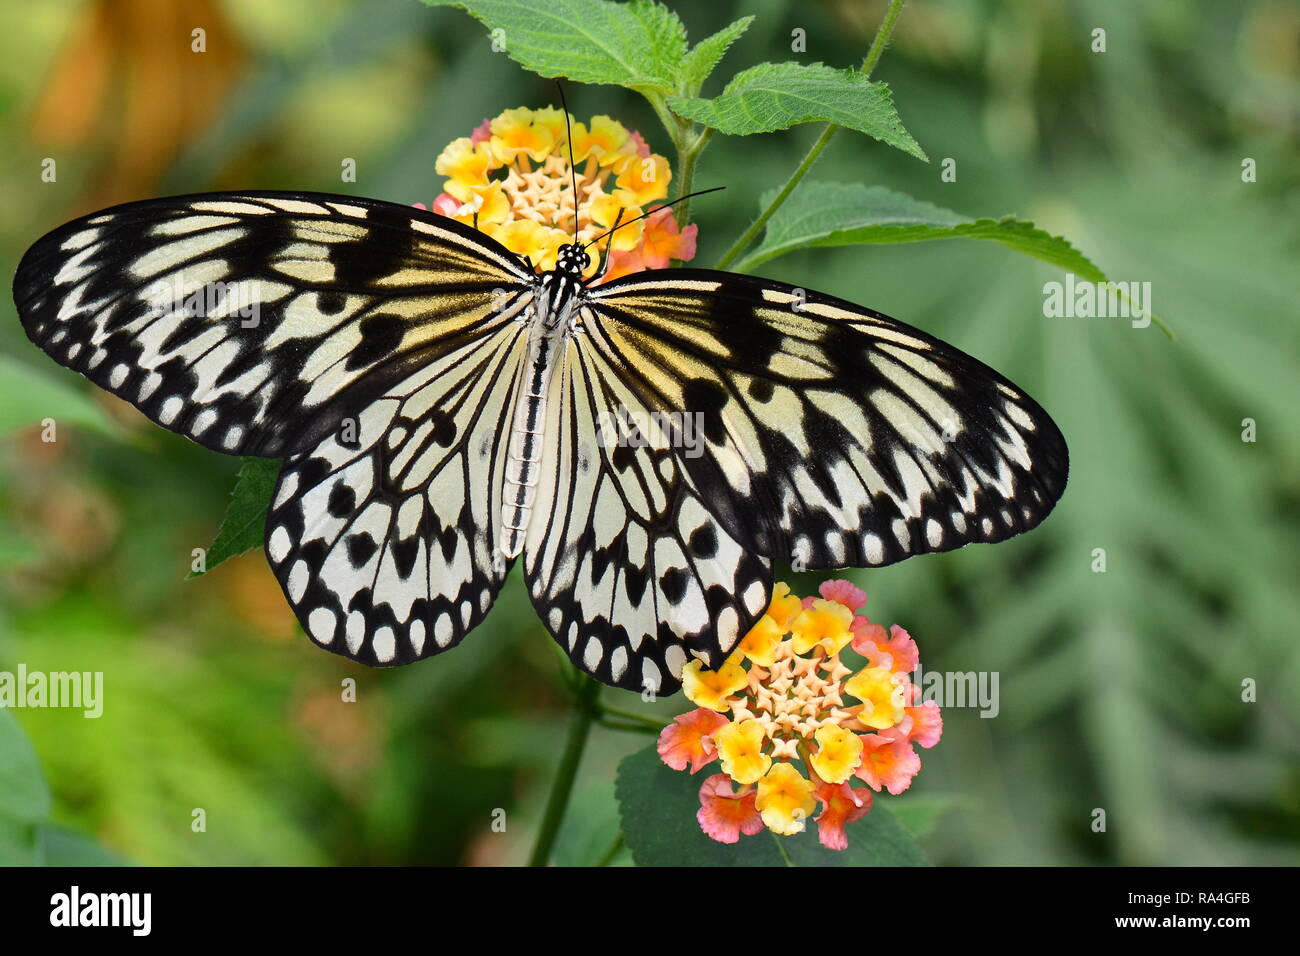 Grand arbre blanc nymphe papillon se nourrit du nectar dans les jardins. Banque D'Images